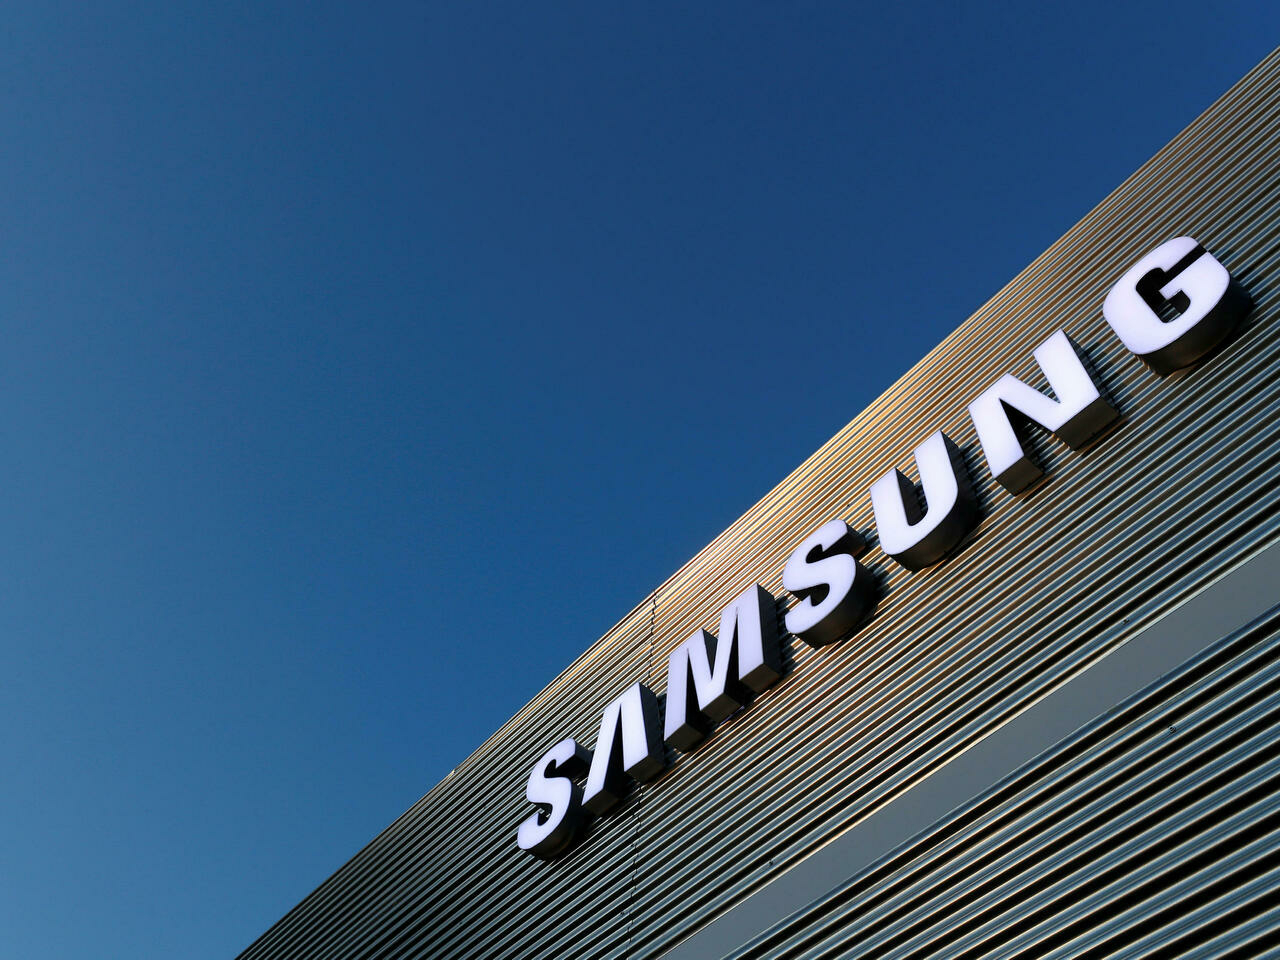 Samsung безкоштовно доставить зламані пристрої українців